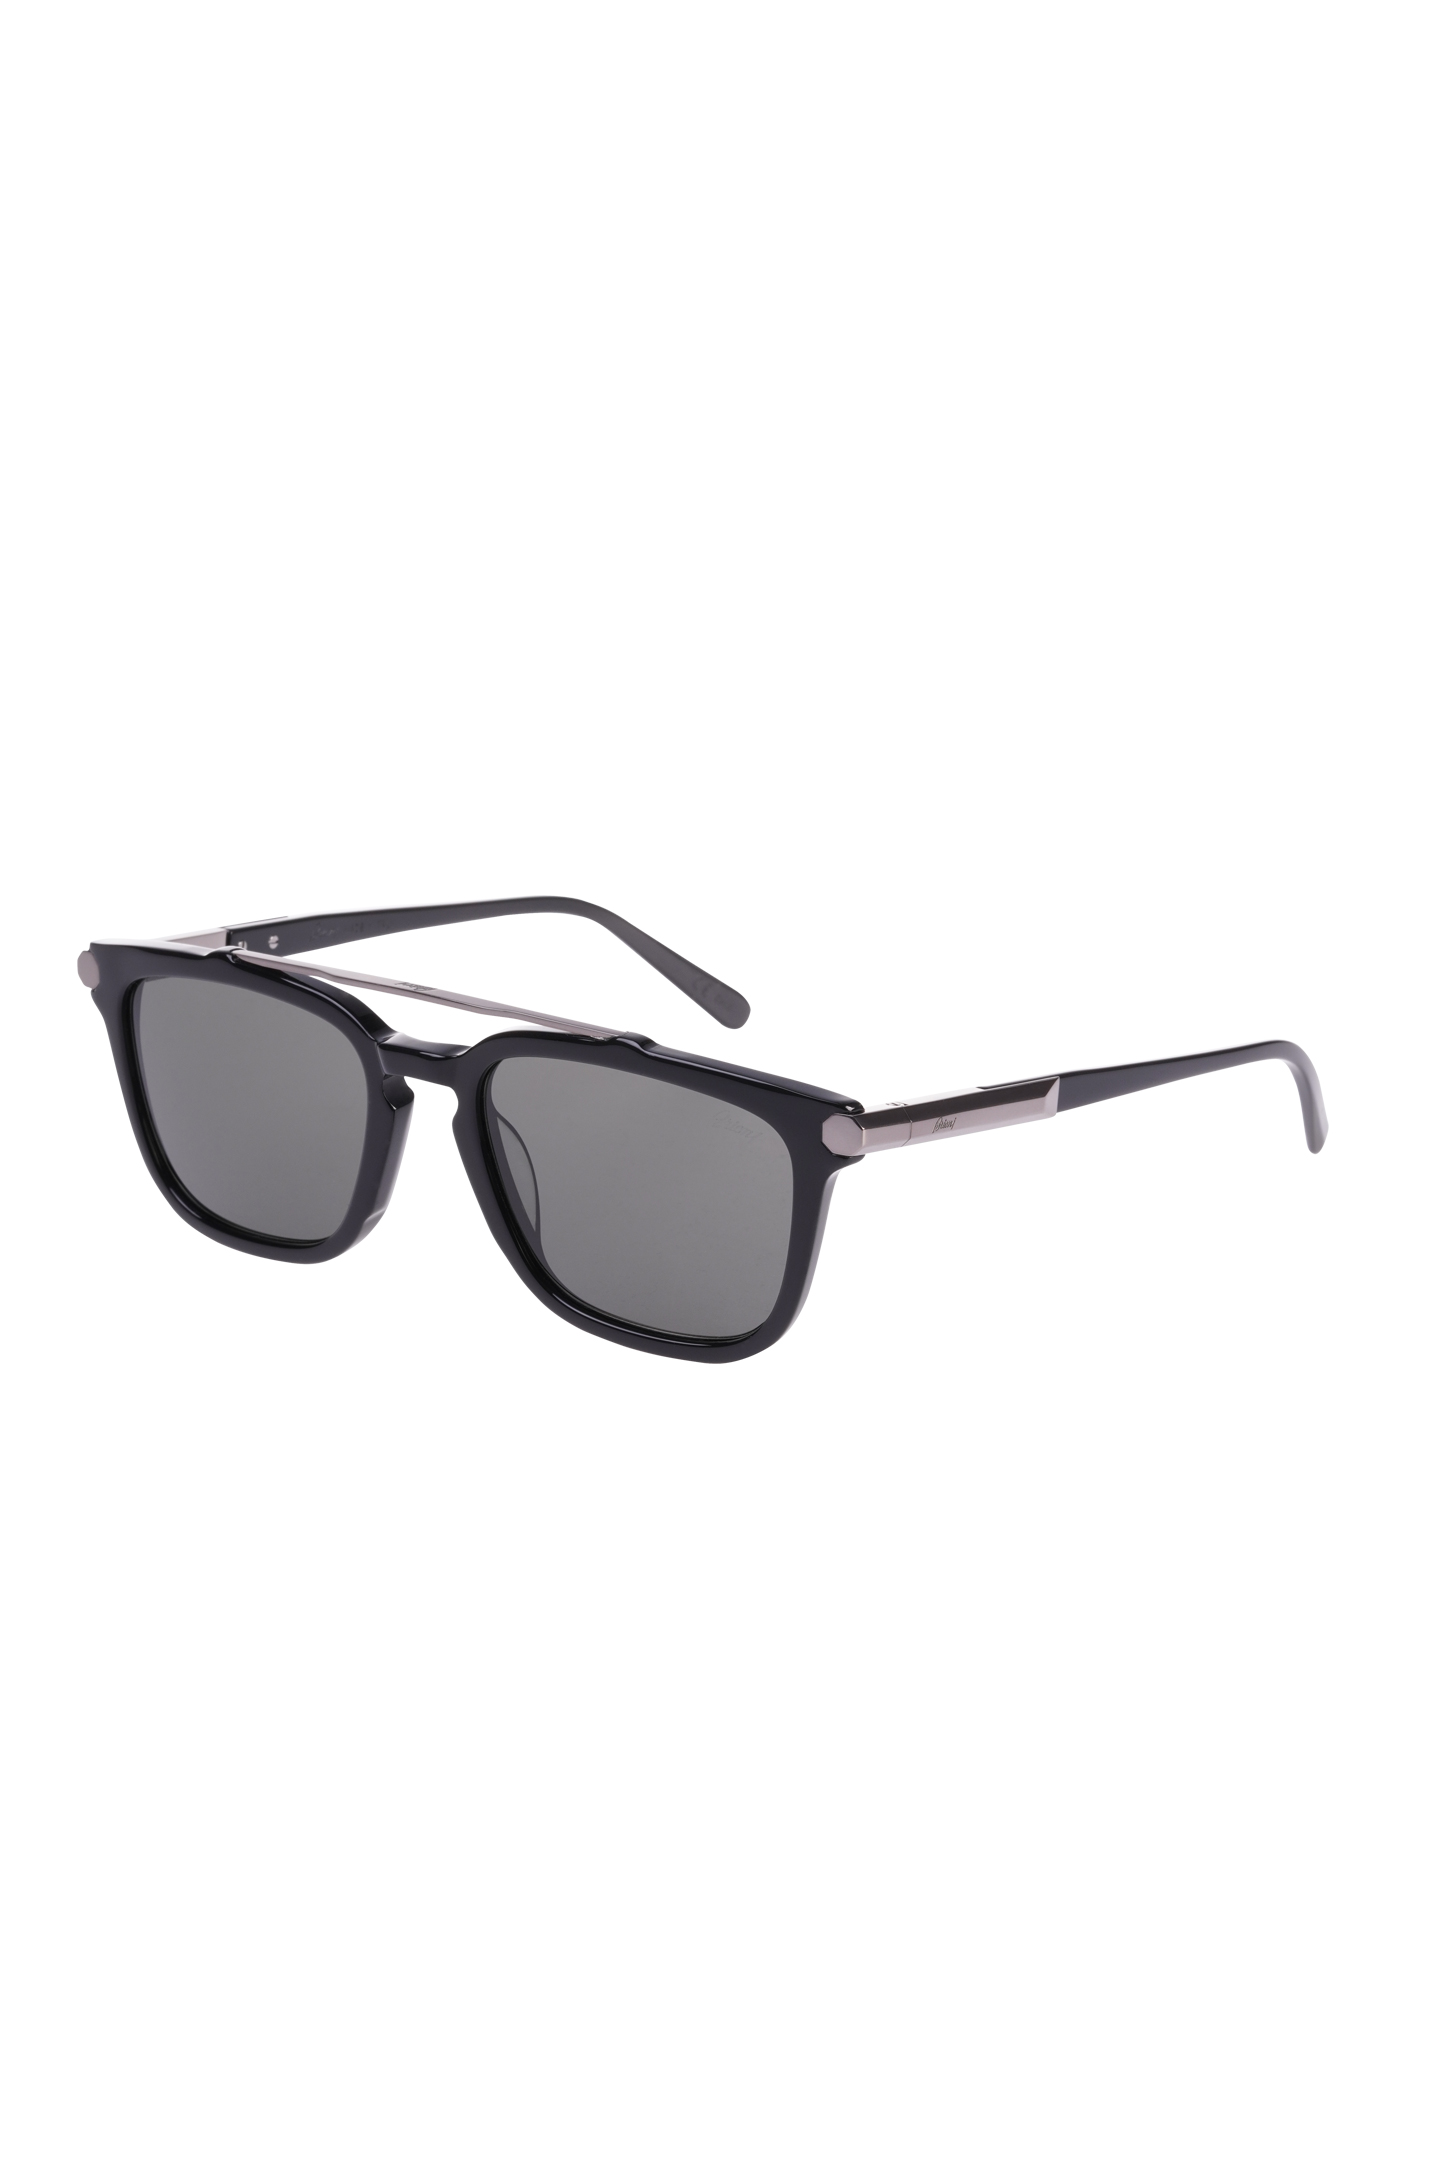 Солнцезащитные очки BRIONI ODC500 P3ZAC, цвет: Черный, Мужской